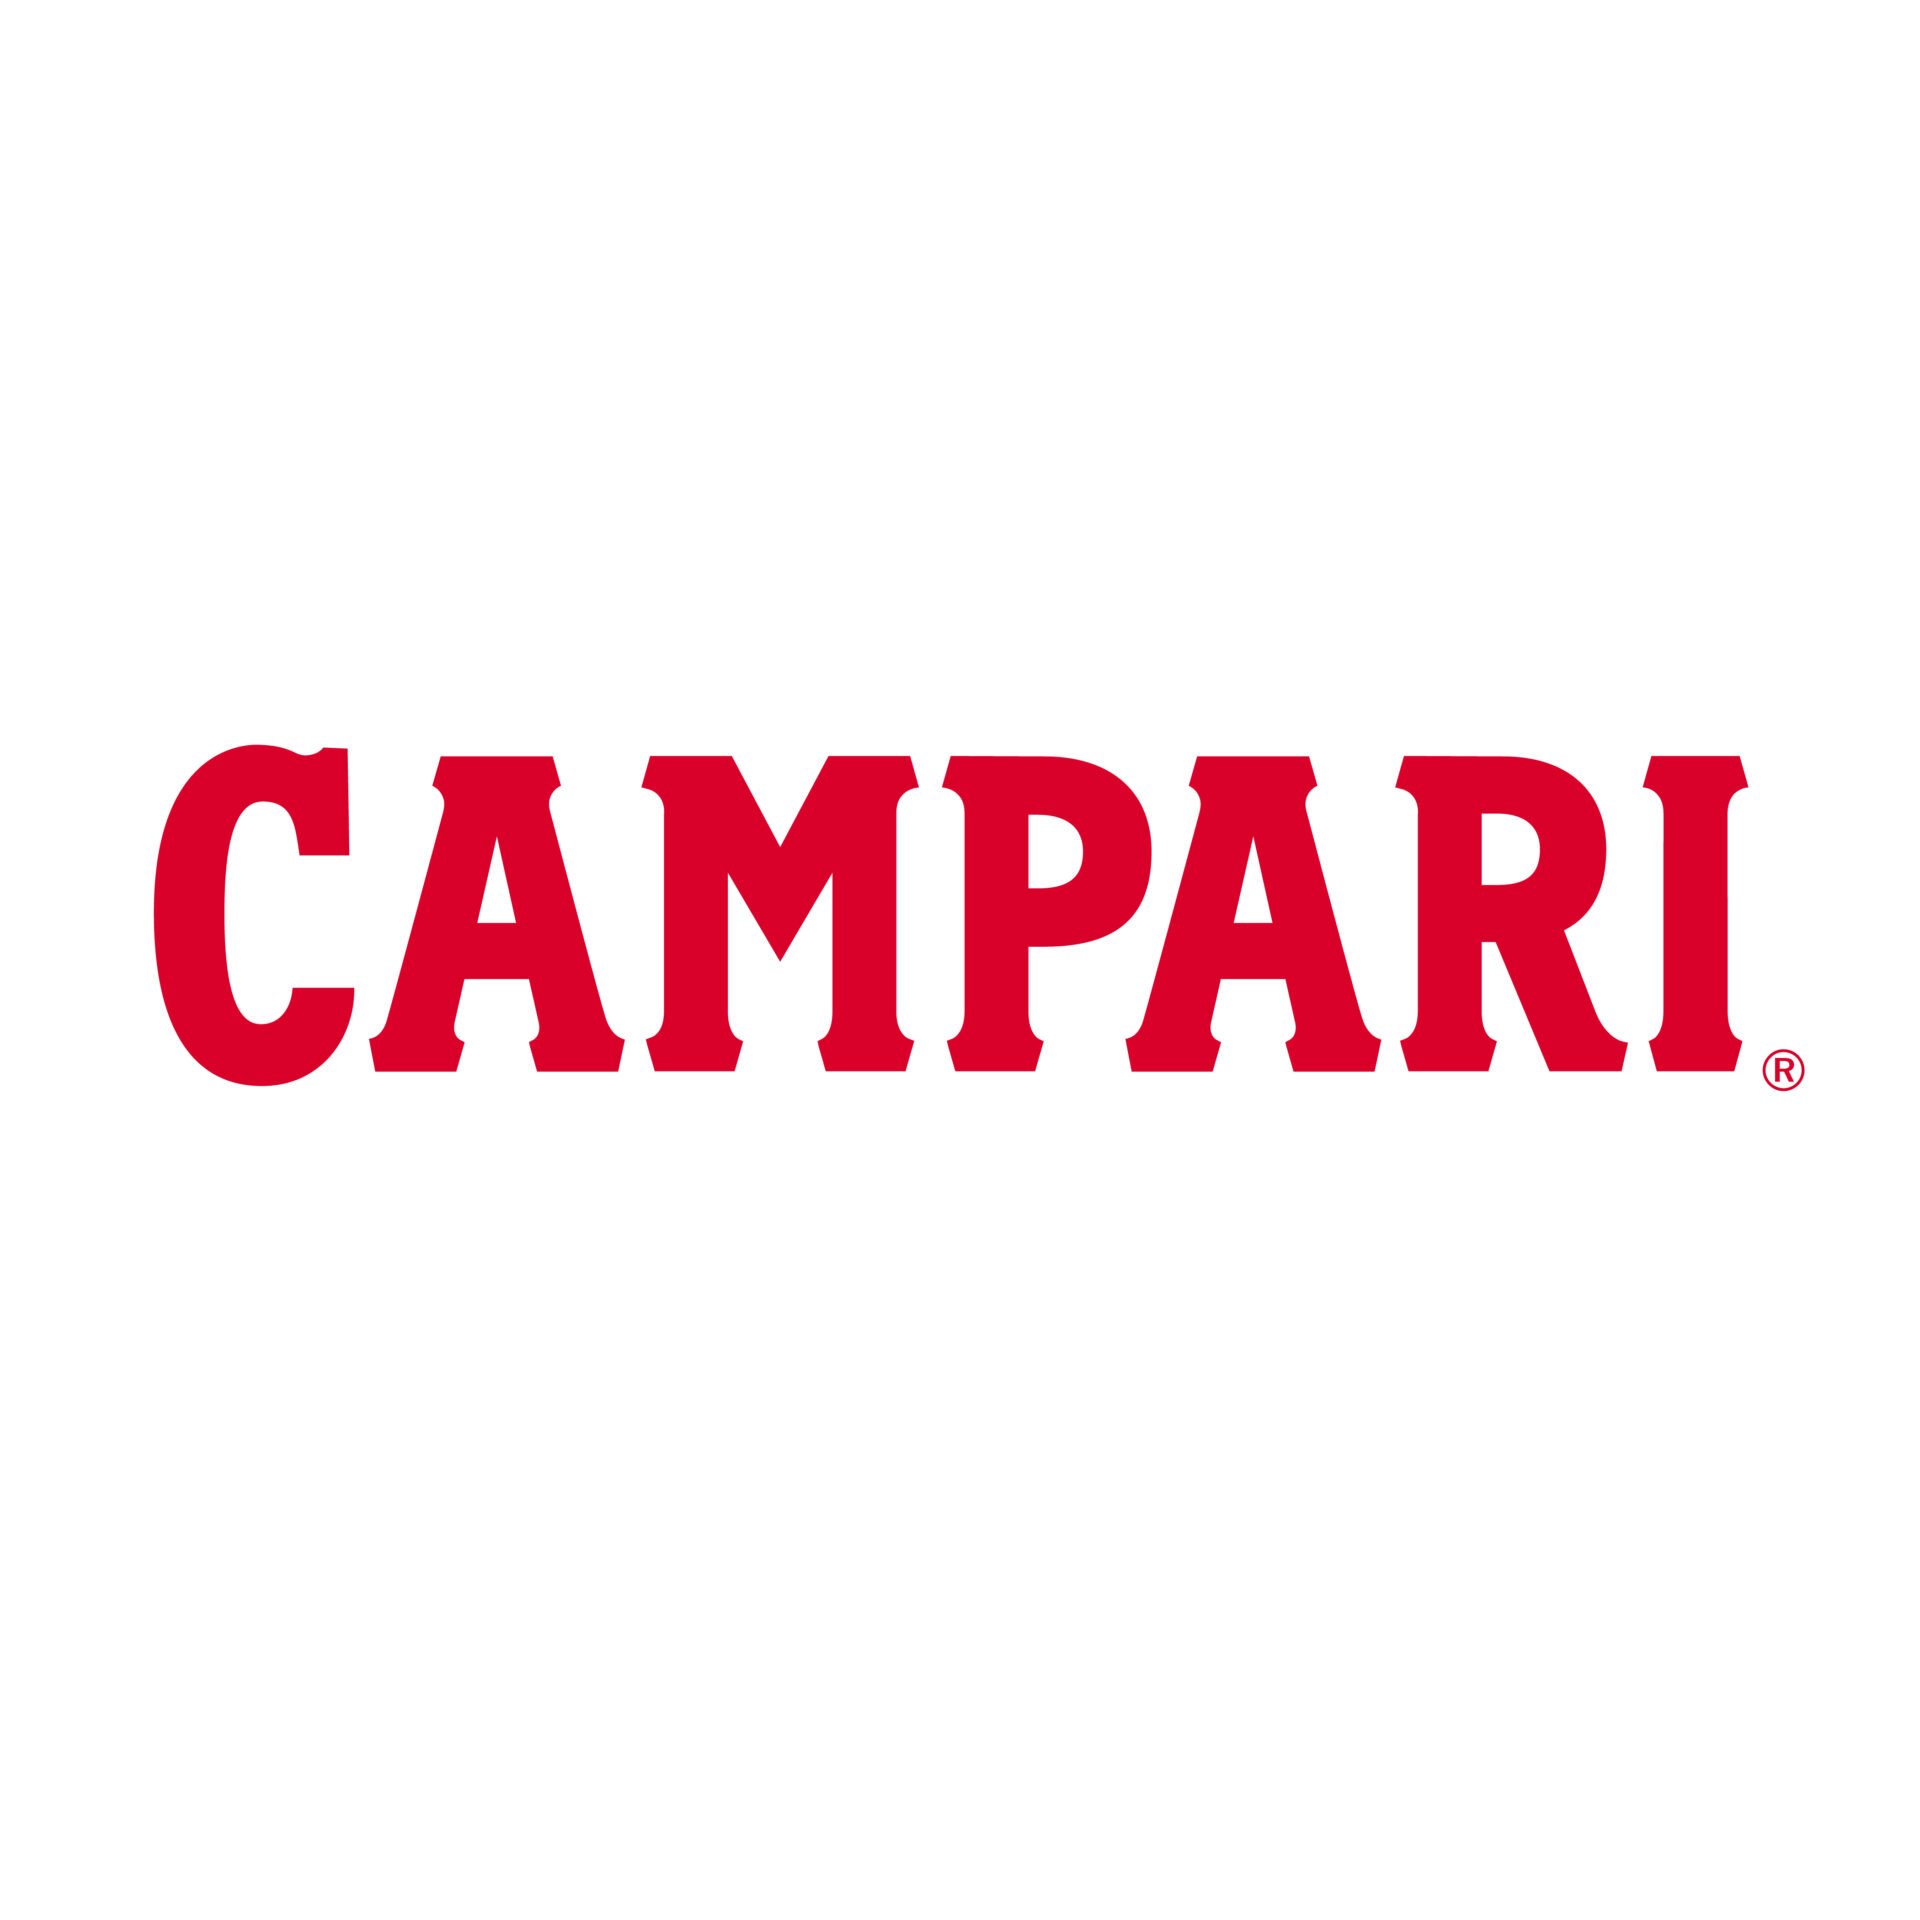 campari_red_logo